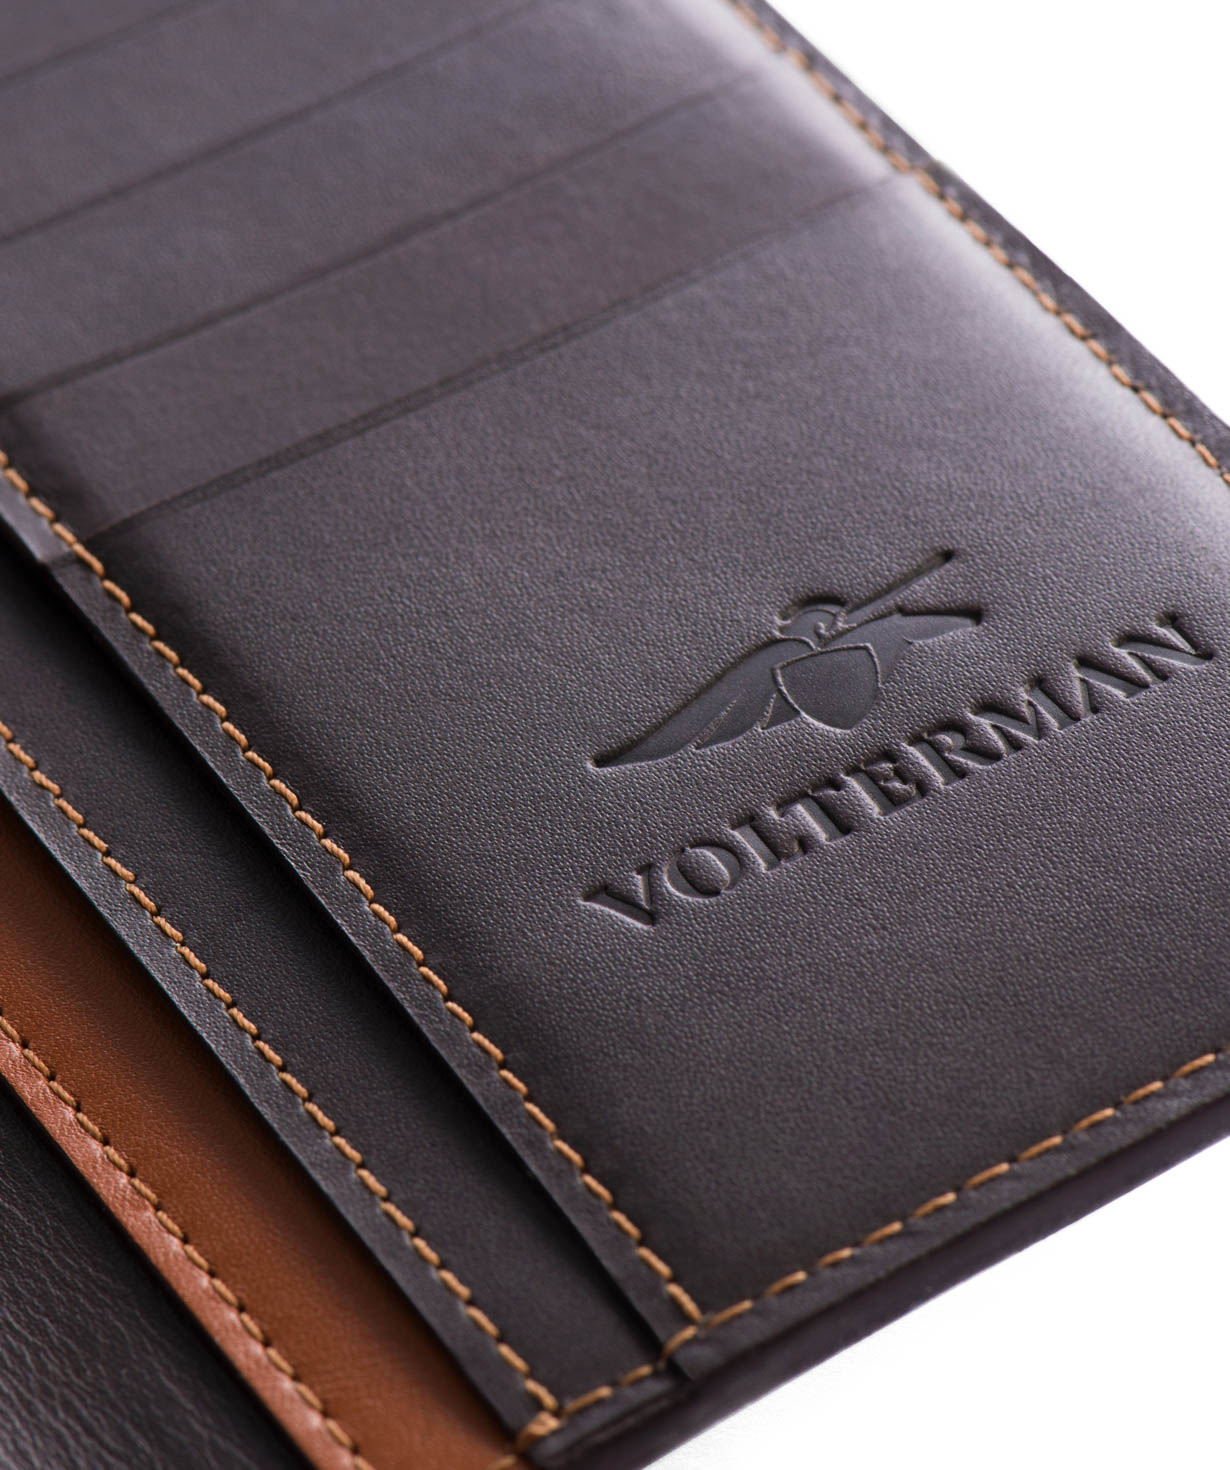 Խելացի դրամապանակ «Volterman» ճամփորդական